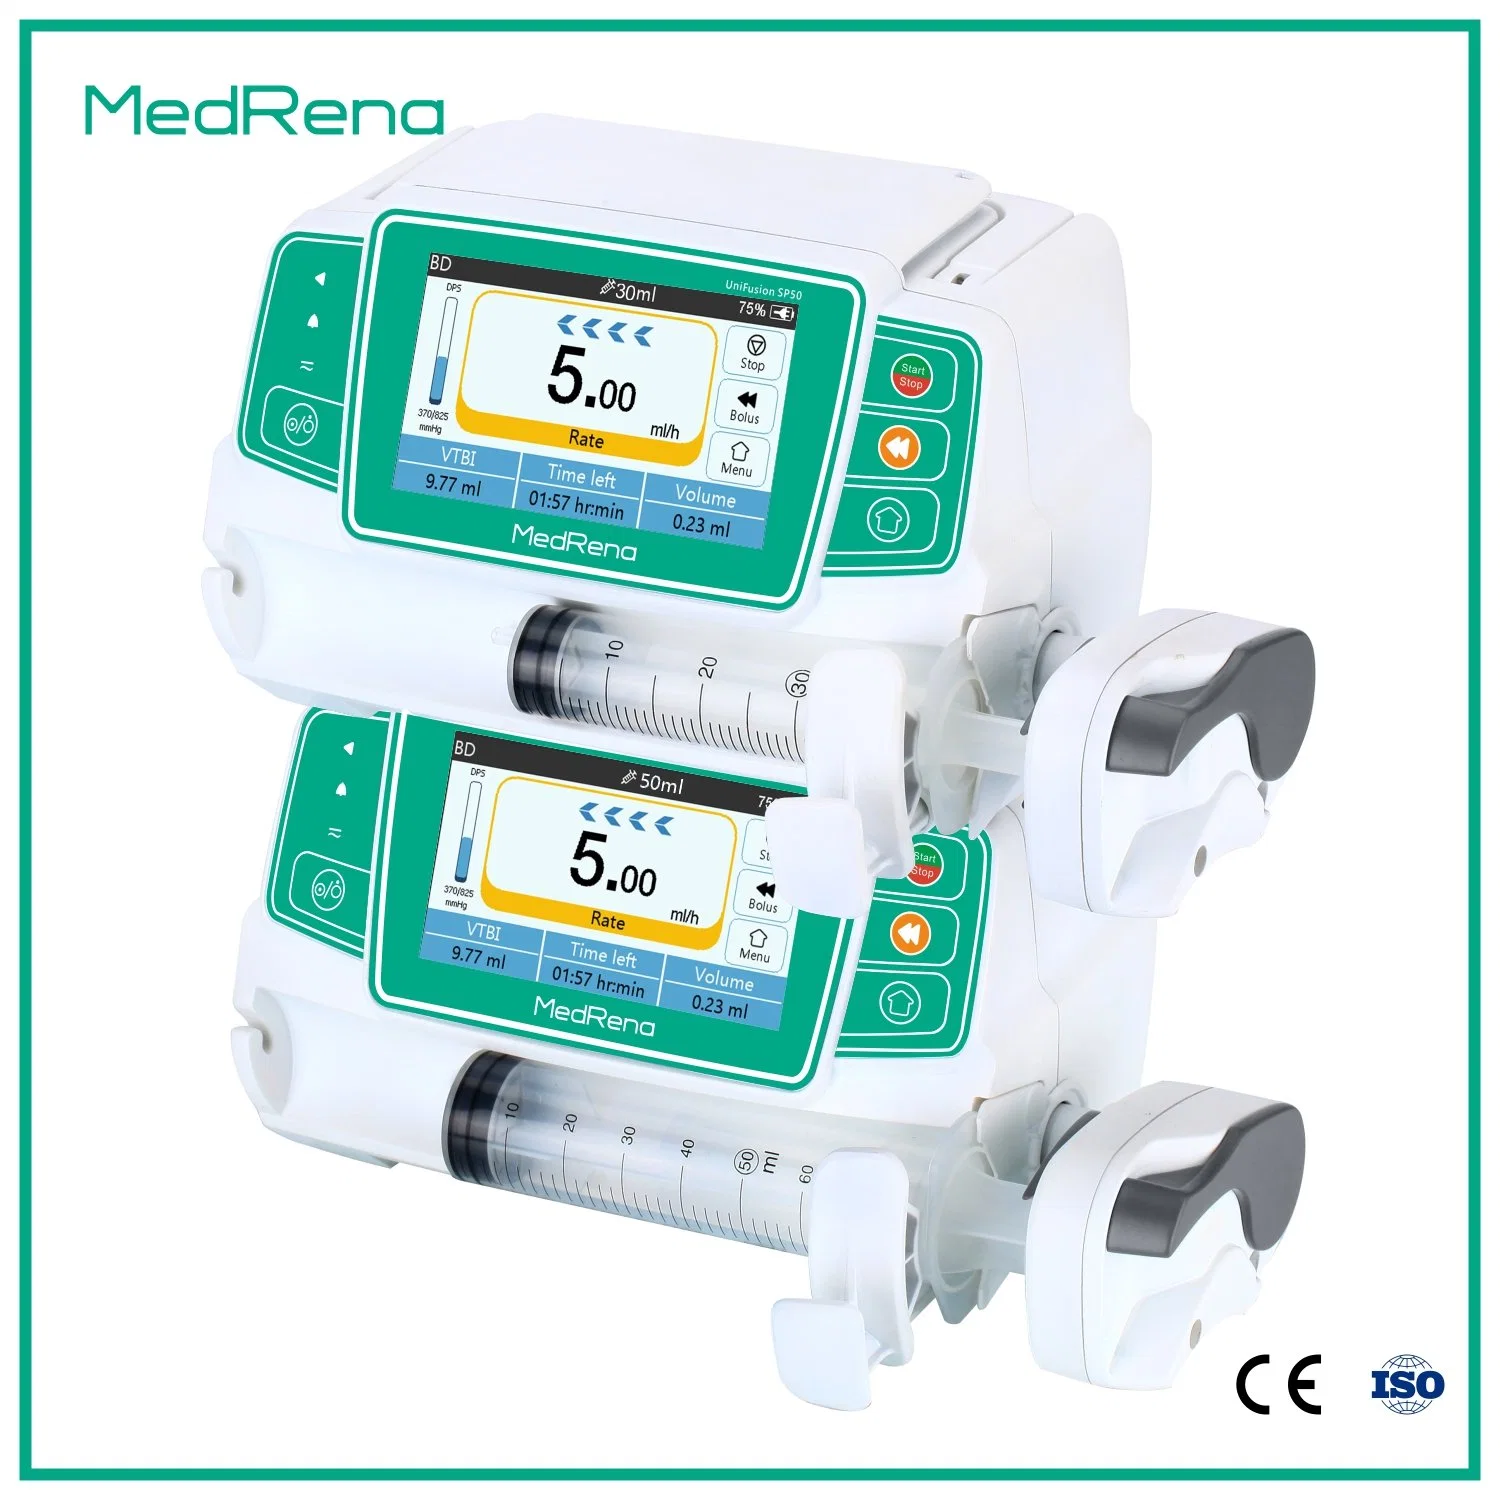 Écran tactile LCD 4,3 pouces seringue médical de la pompe à perfusion dans l'ICU, Nicu, ou